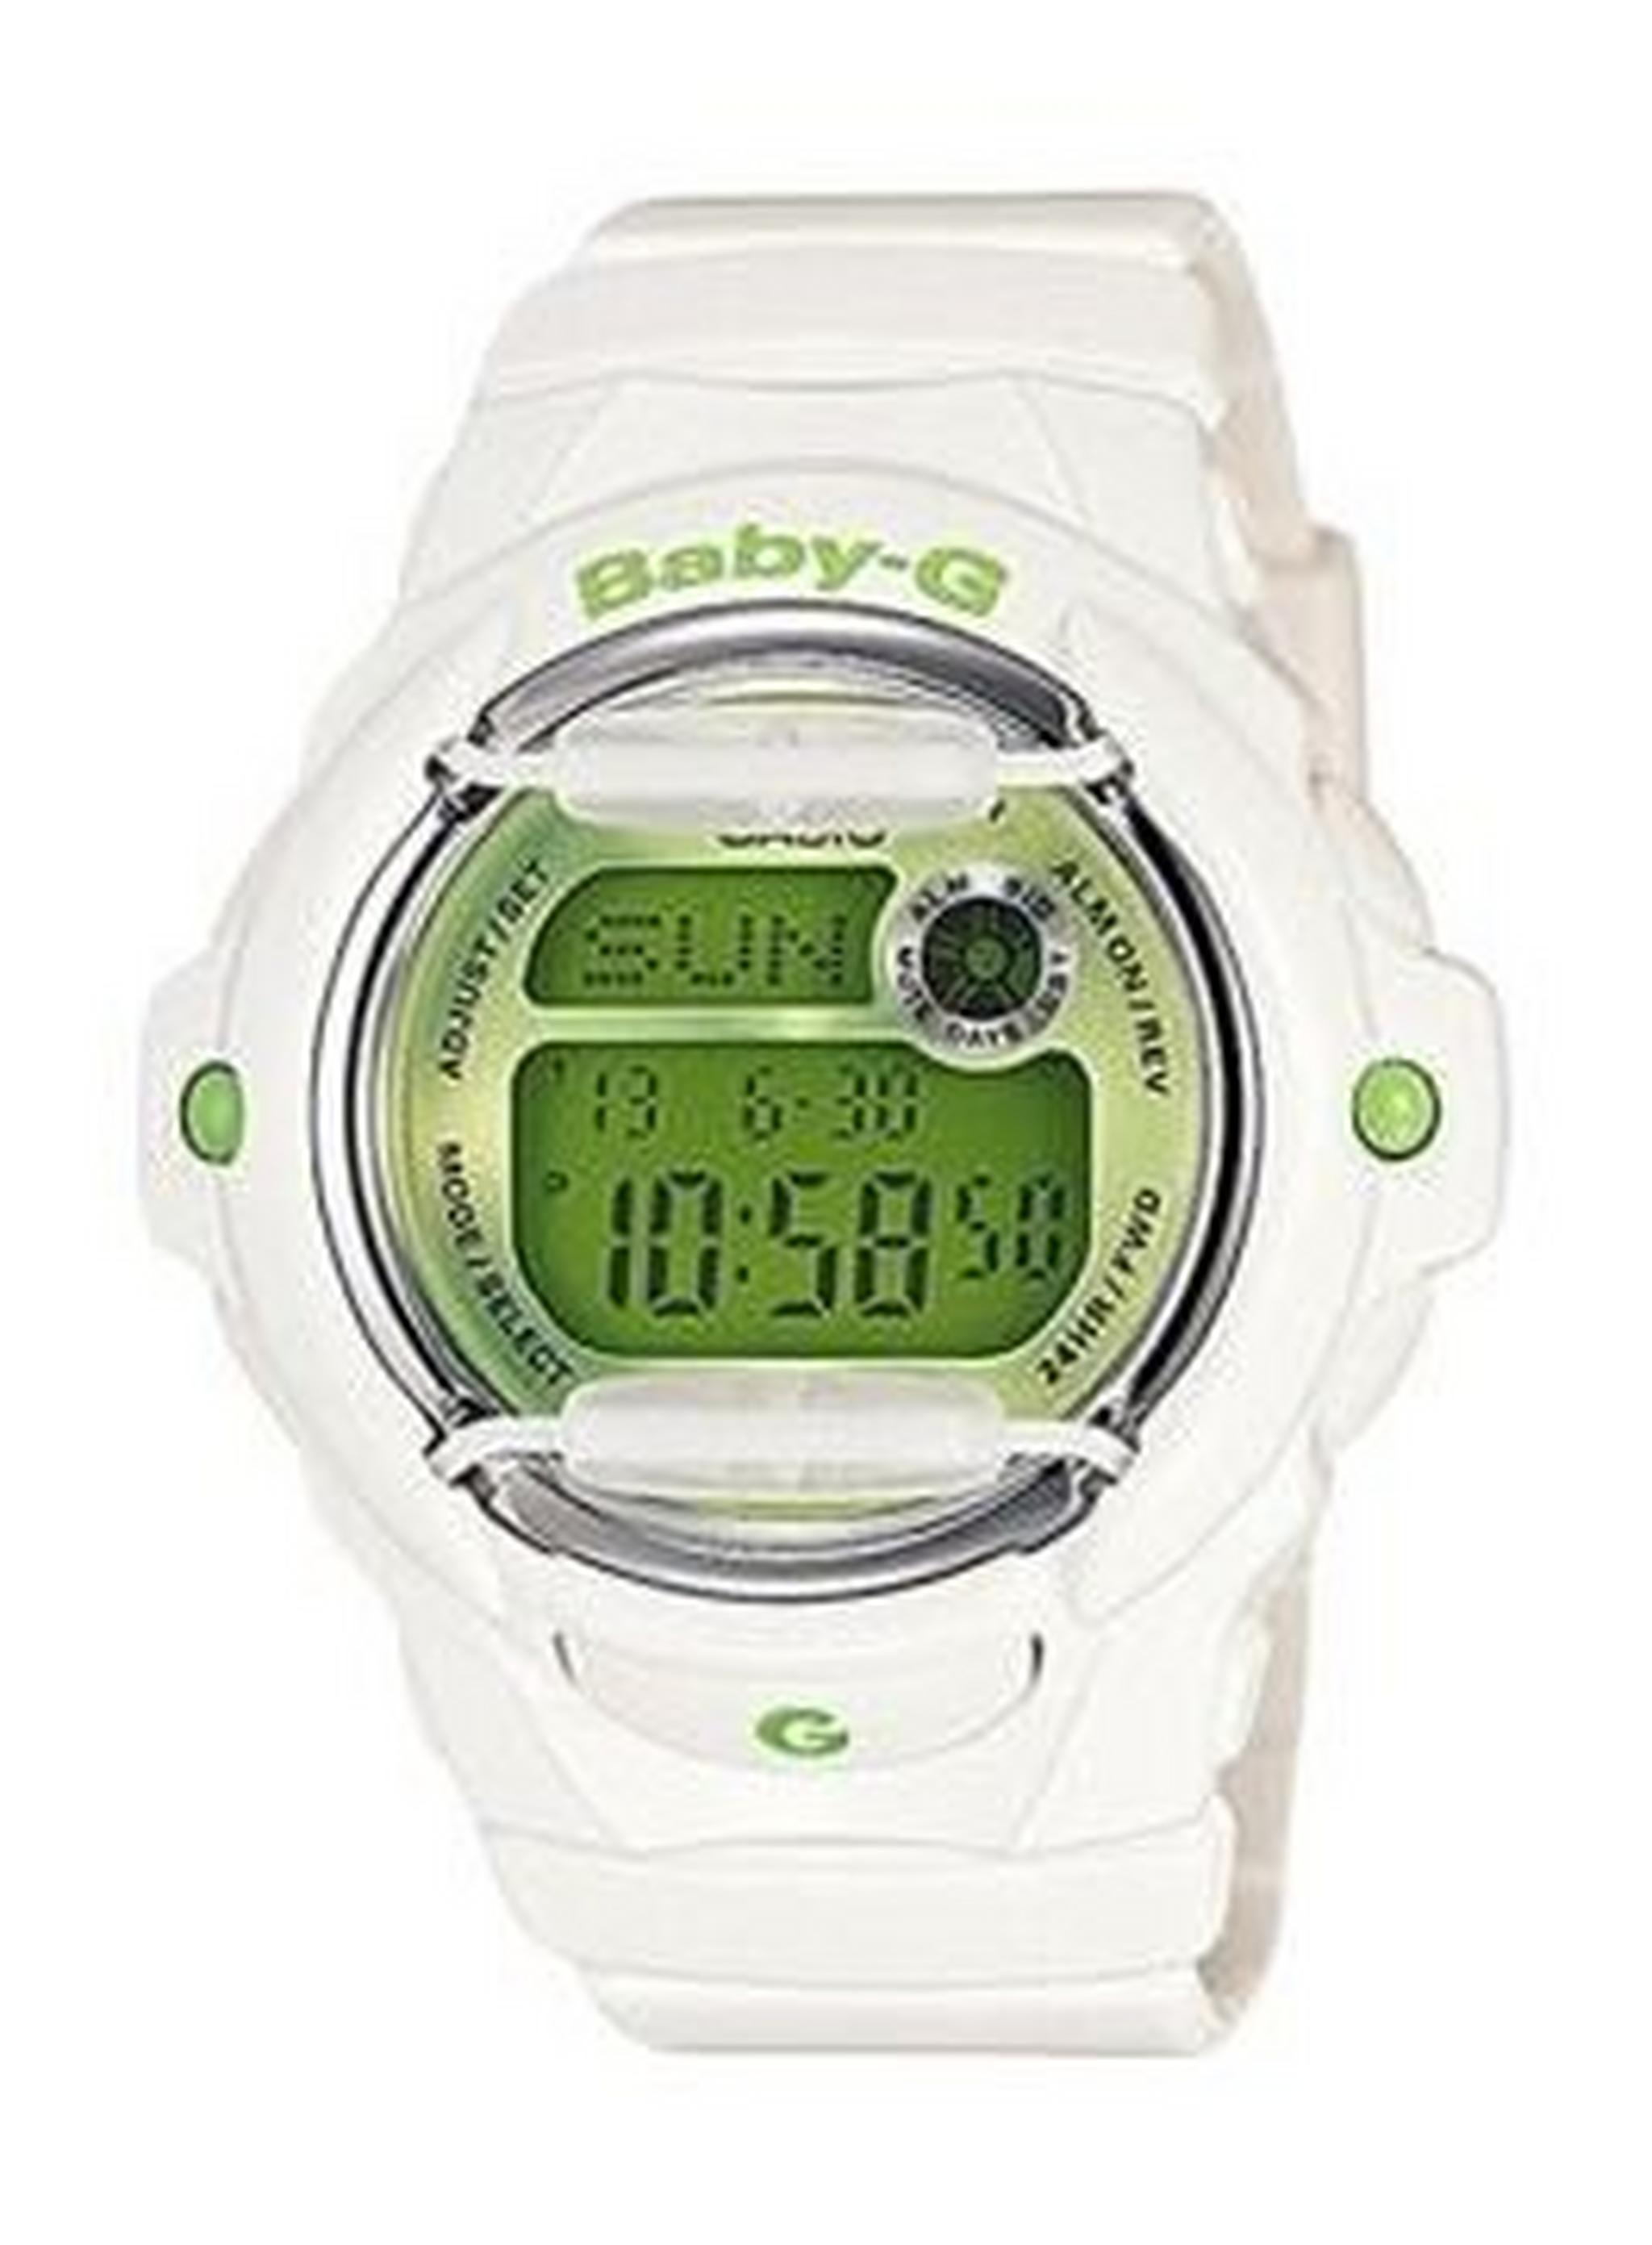 Casio Baby-G White Band Digital Women's Watch (BG-169R-3DR)